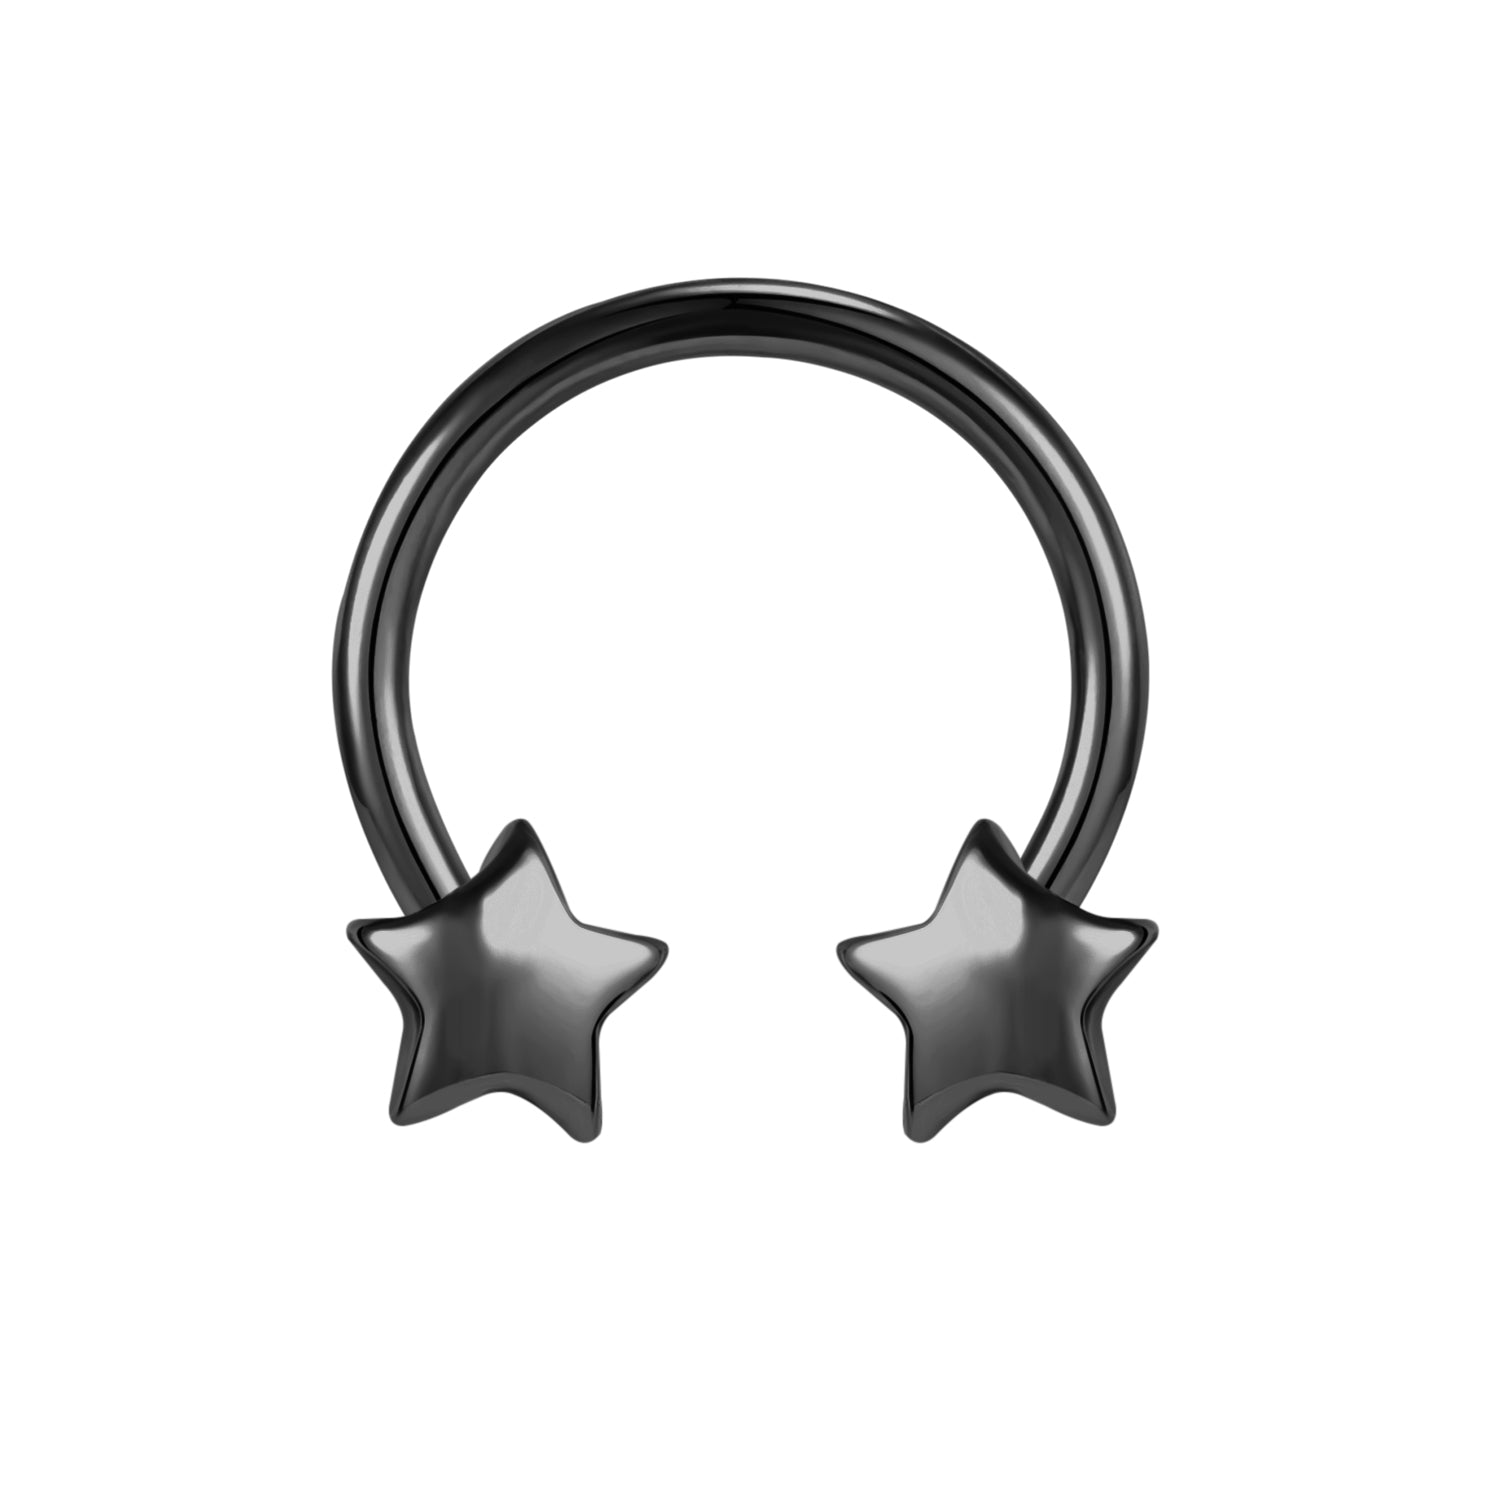 16G-Star-Nose-Rings-Horseshoe-Shape-Nose-Septum-Rings-Stainless-Steel-Septum-Clicker-Piercing